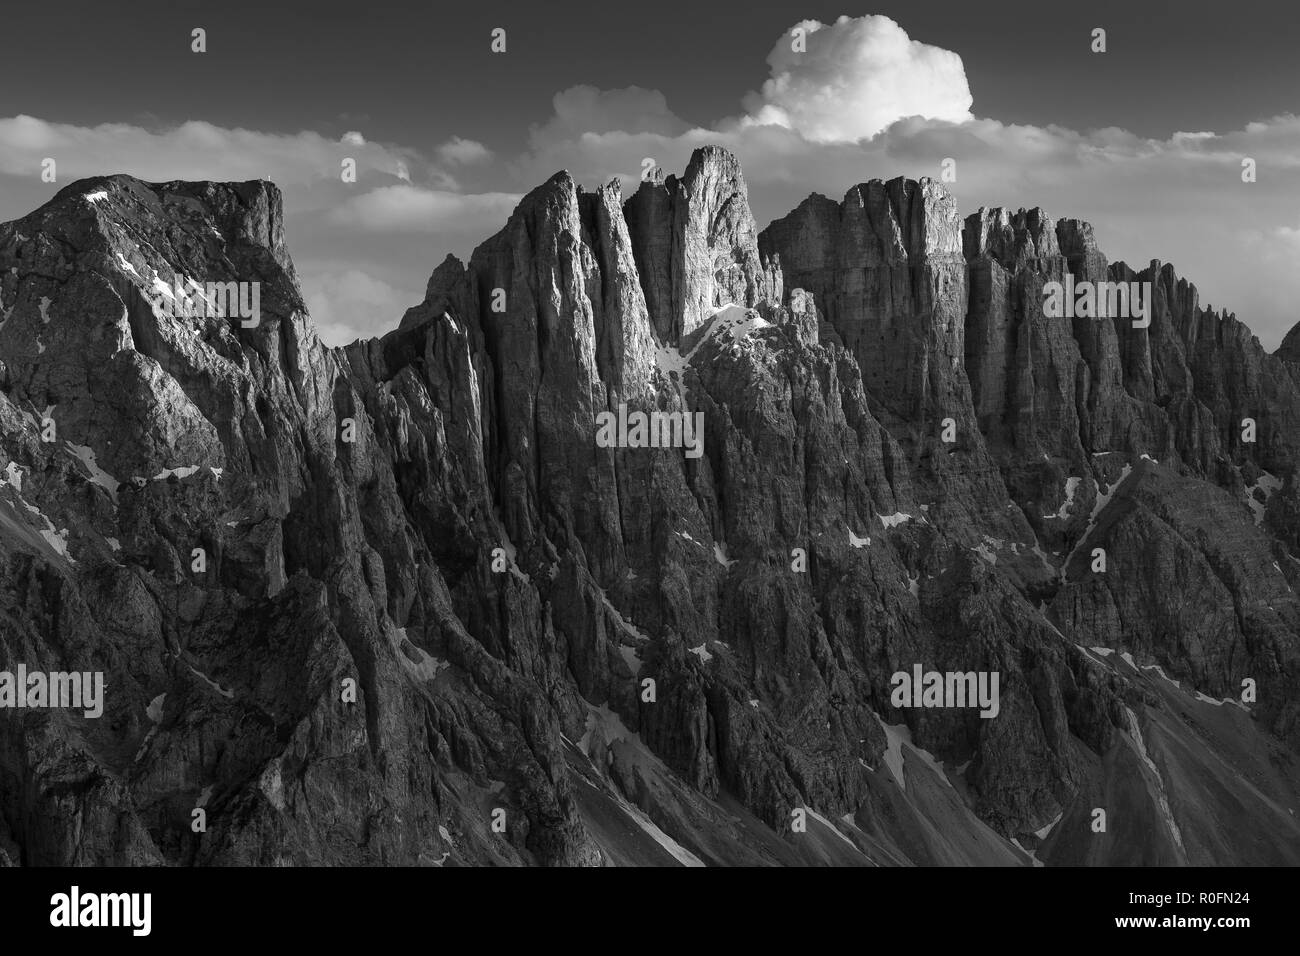 Latemar Gruppe die Berge bei Sonnenuntergang. Val d'Ega. Die Dolomiten von Südtirol. Italienische Alpen. Schwarz Weiß Berglandschaft. Stockfoto